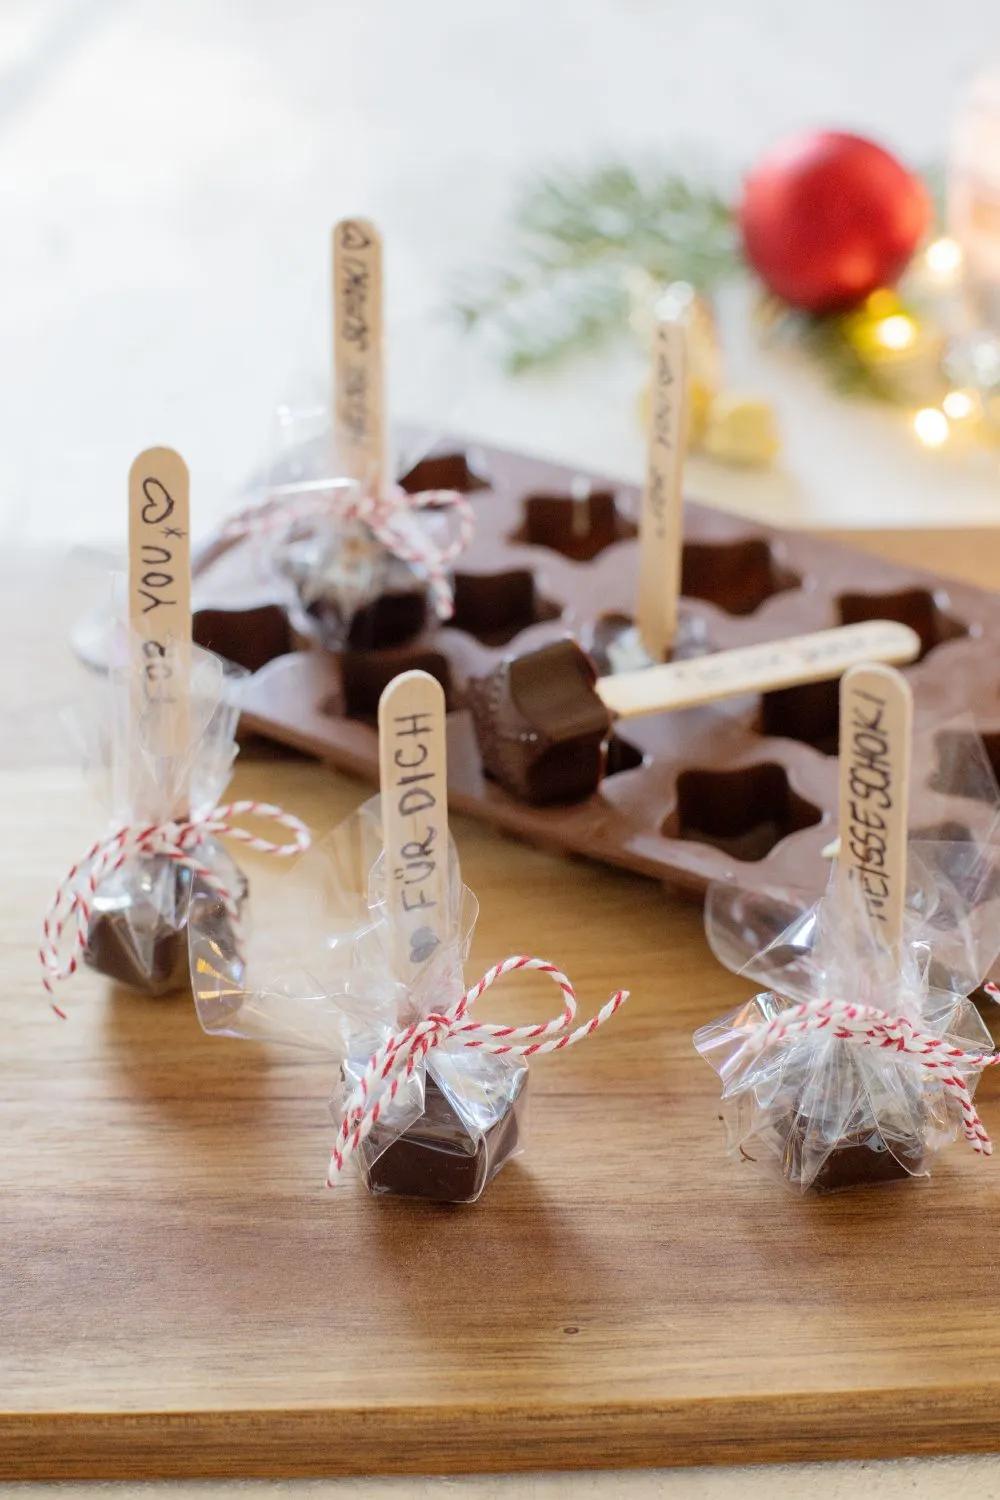 DIY Geschenk: Schokolade am Stiel (für heiße Schokolade) - TRYTRYTRY ...